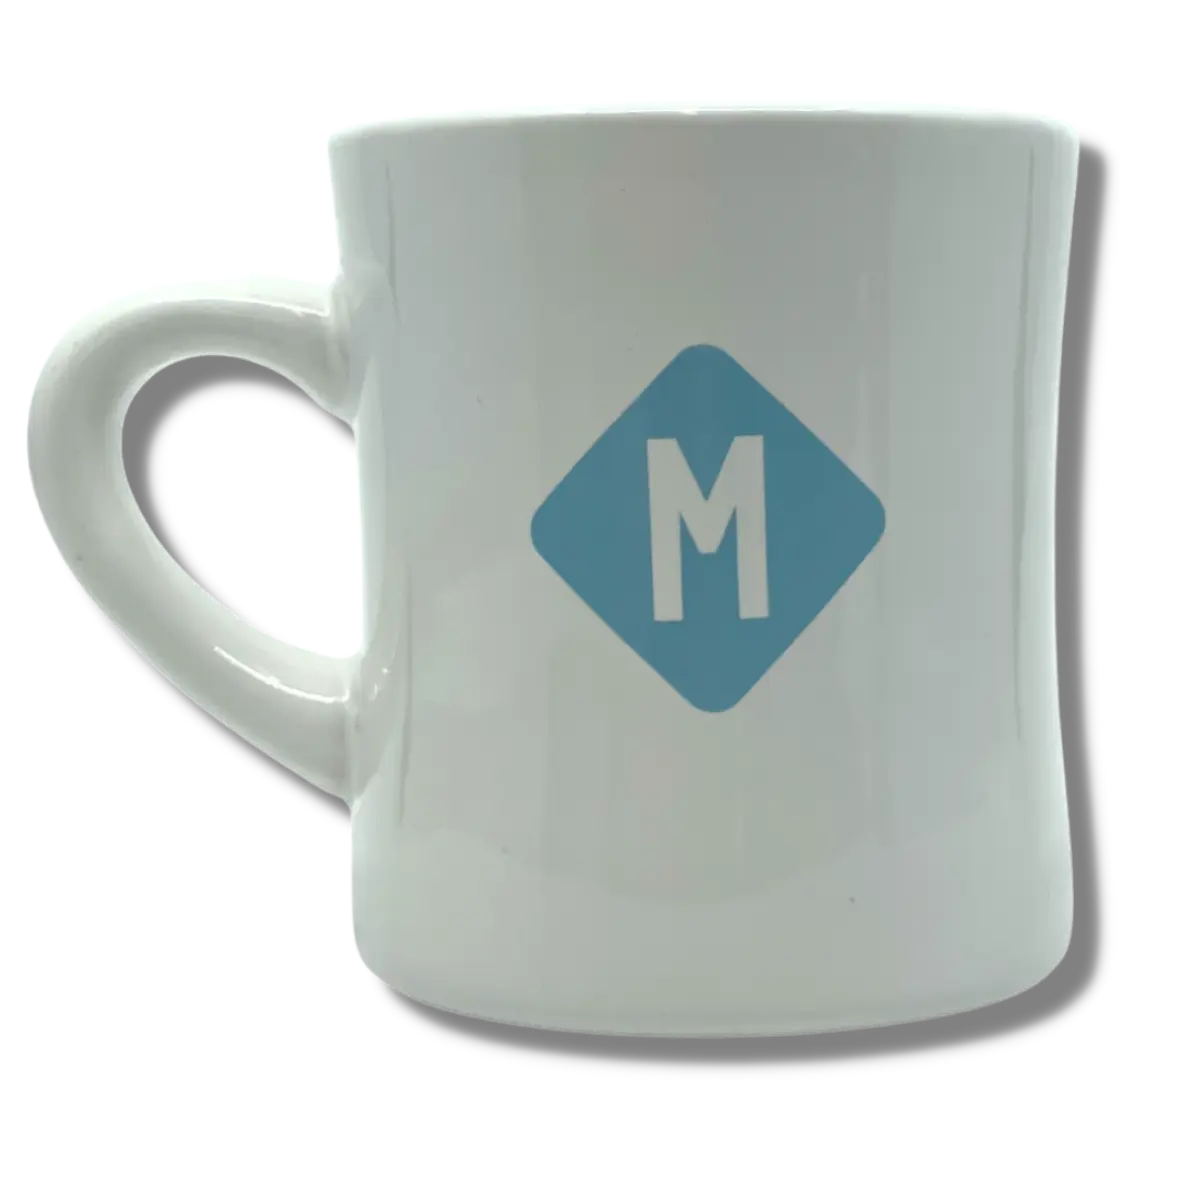 Micrology Diner Mug Micrology Coffee